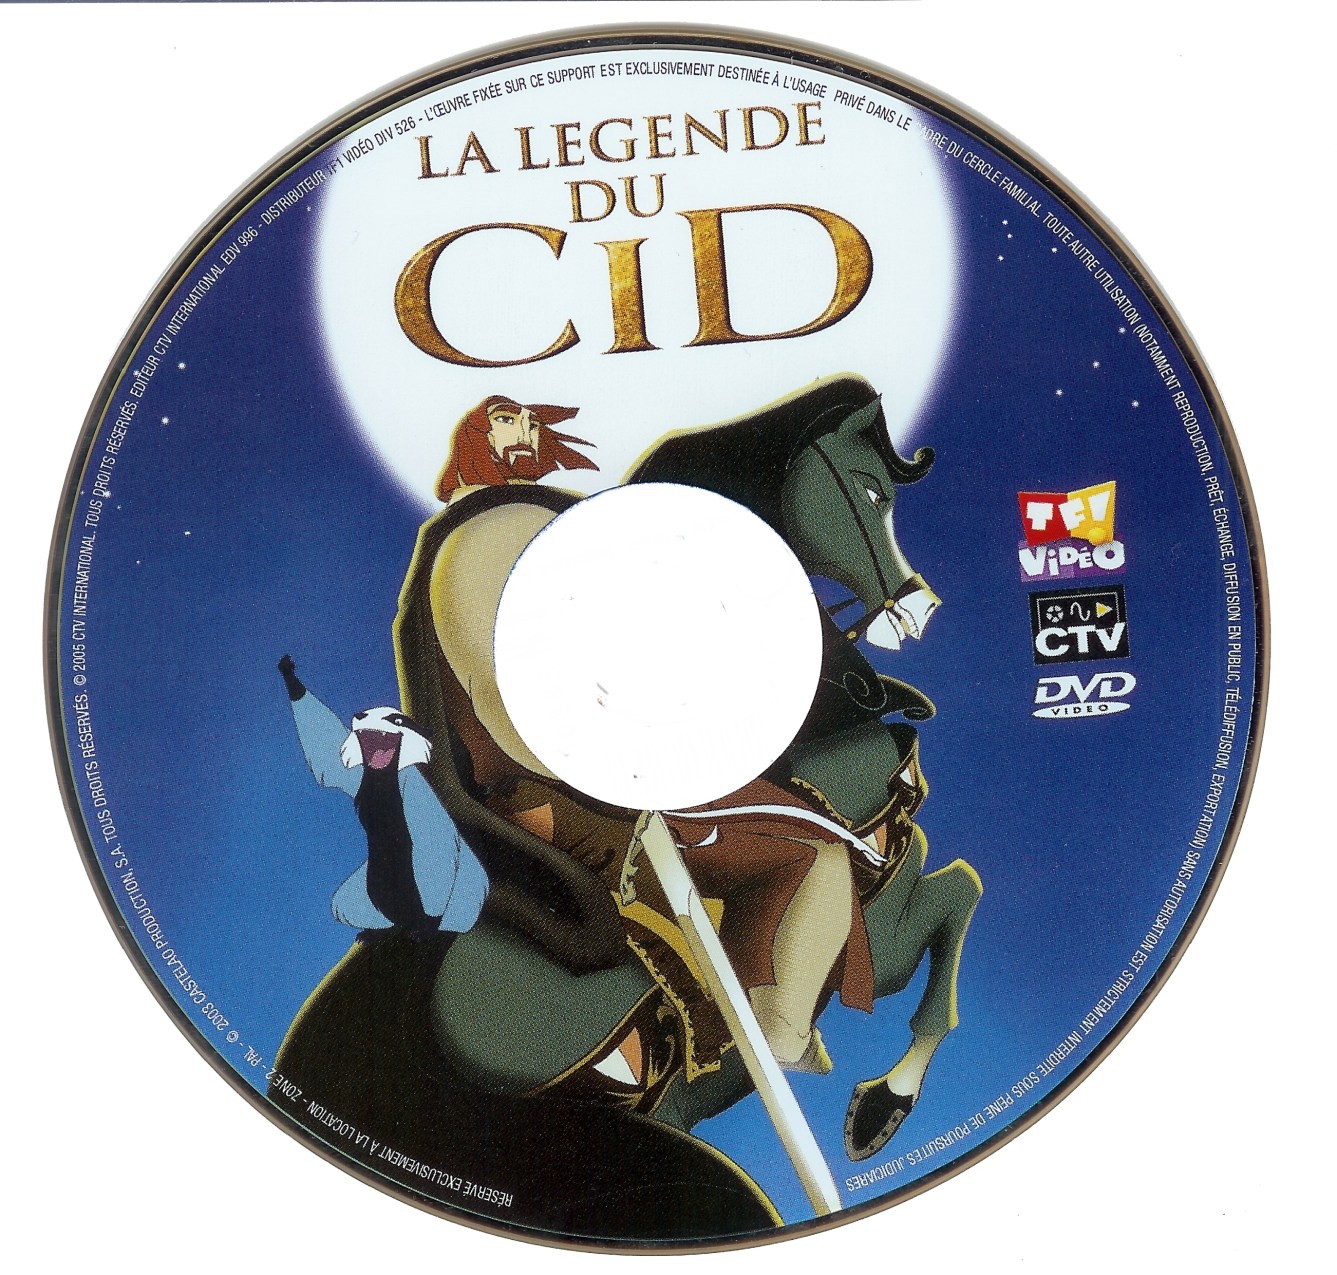 La legende du Cid